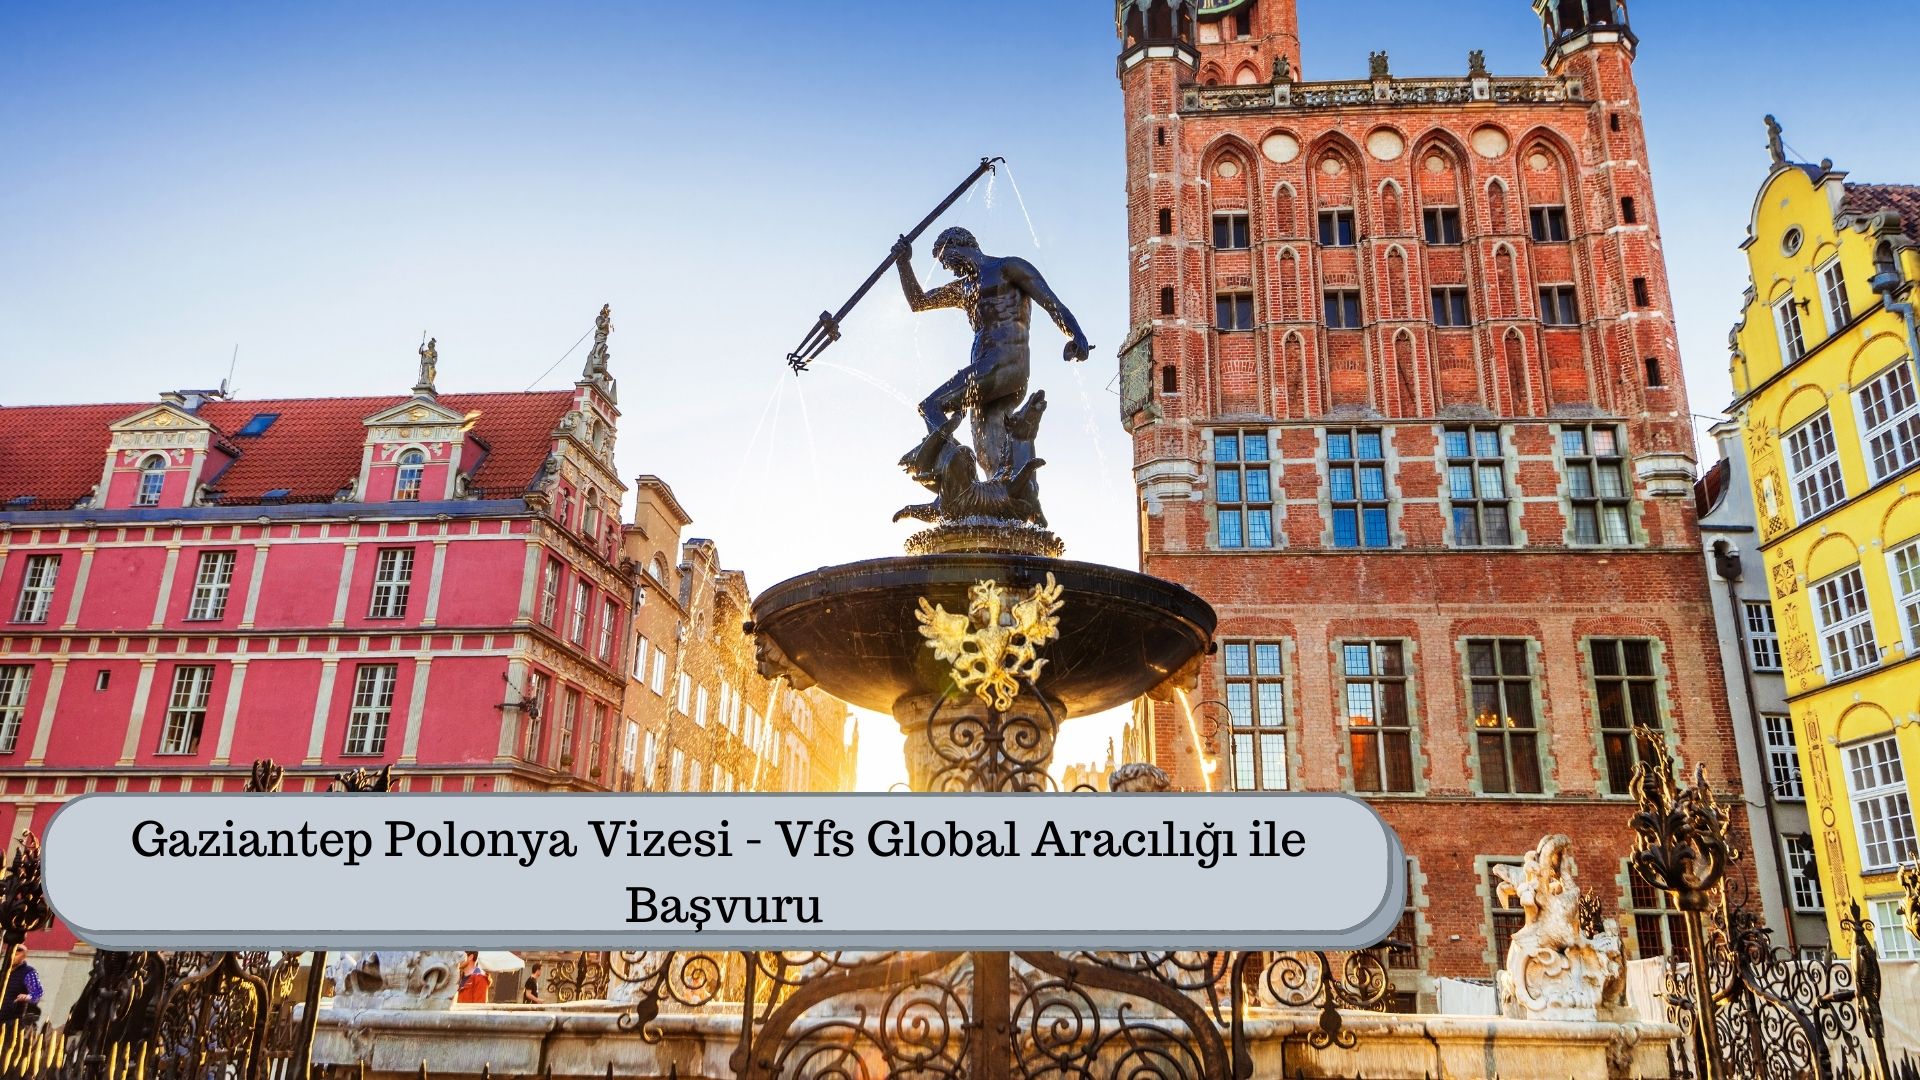 Gaziantep Polonya Vizesi – Vfs Global Aracılığı ile Başvuru